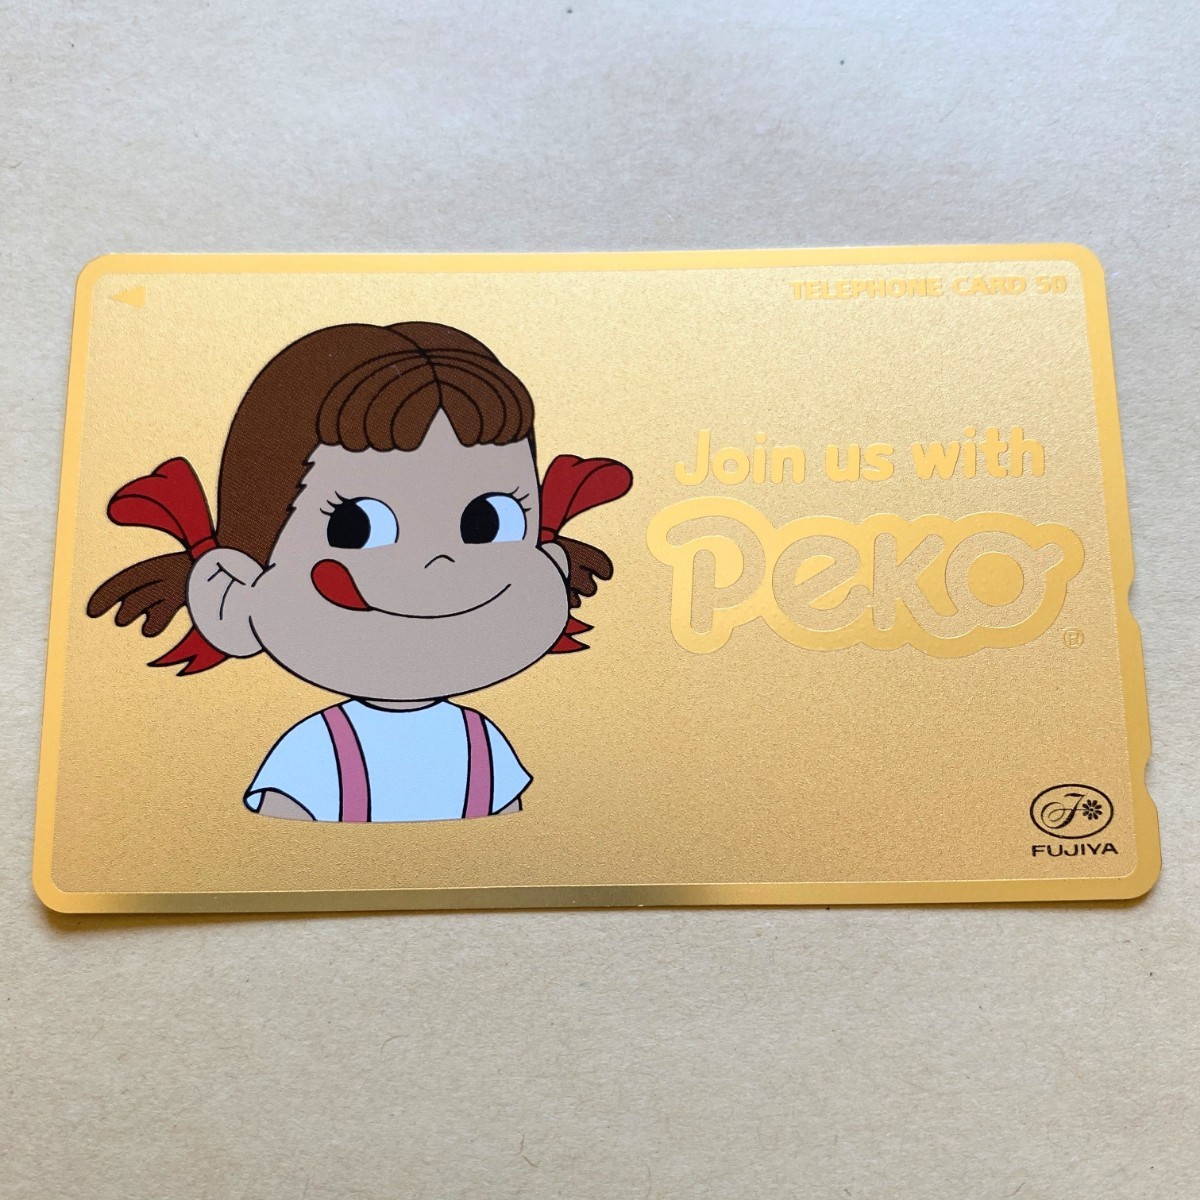 【未使用】テレカ ペコちゃん Join us with Peko ゴールド 不二家_画像1